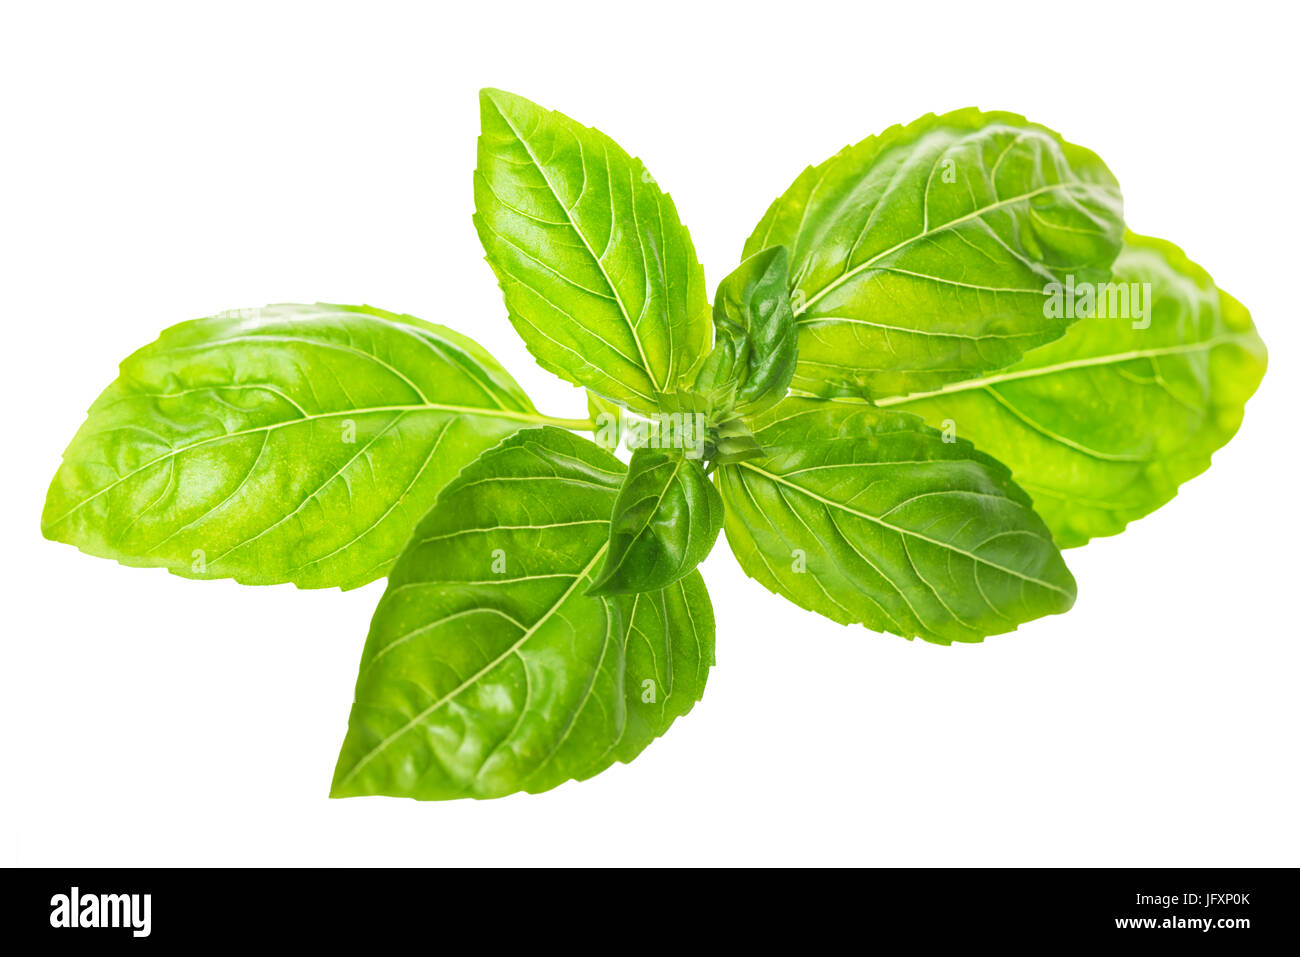 fresh green twig of seasoning basil isolated on white background, close up Stock Photo